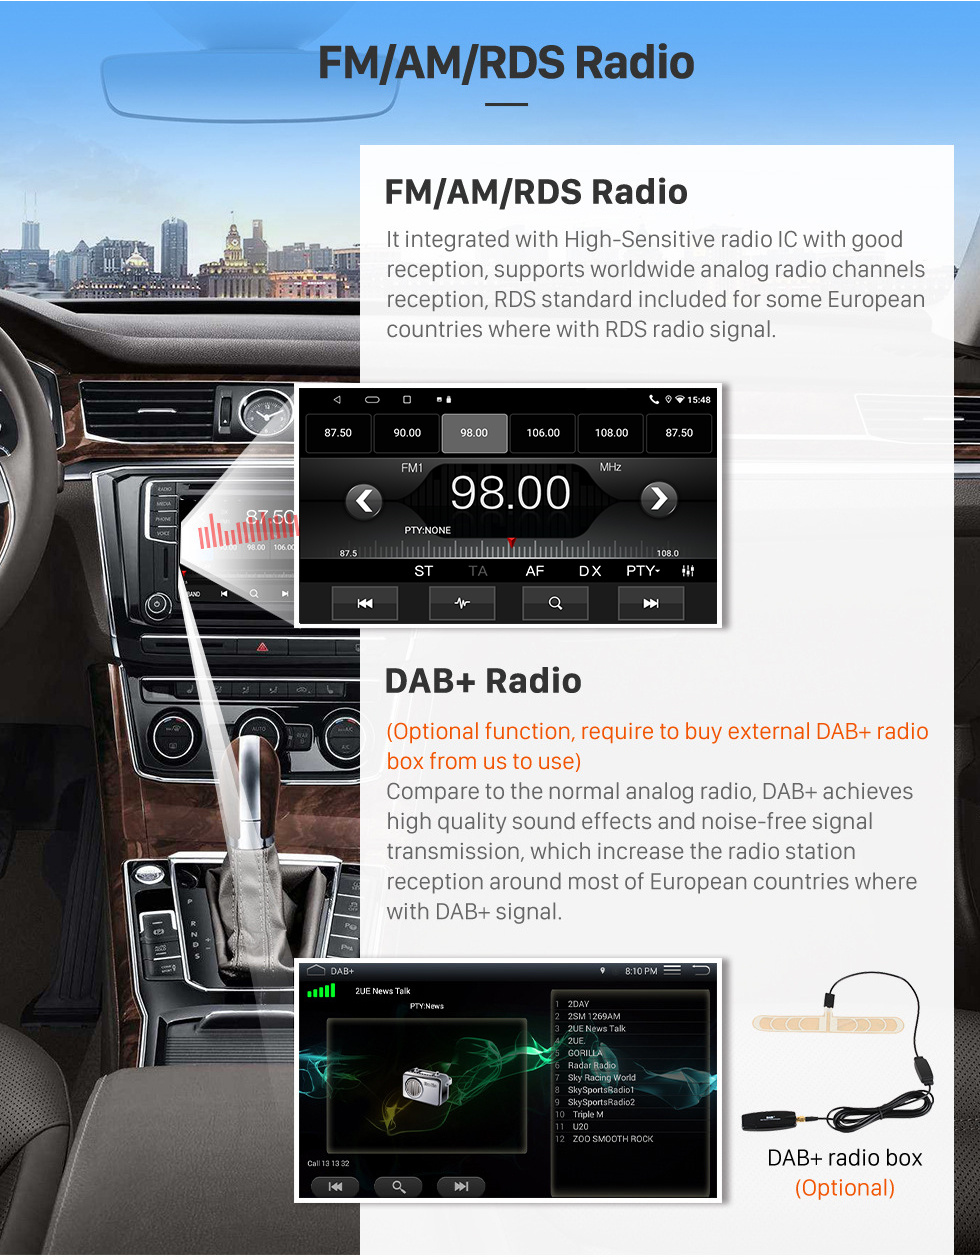 Seicane 9-дюймовый сенсорный экран HD для 2009-2021 HONDA INSIGHT LHD Стерео Автомобильный радиоприемник Bluetooth Android Автомобильный GPS-навигатор Поддержка DVR